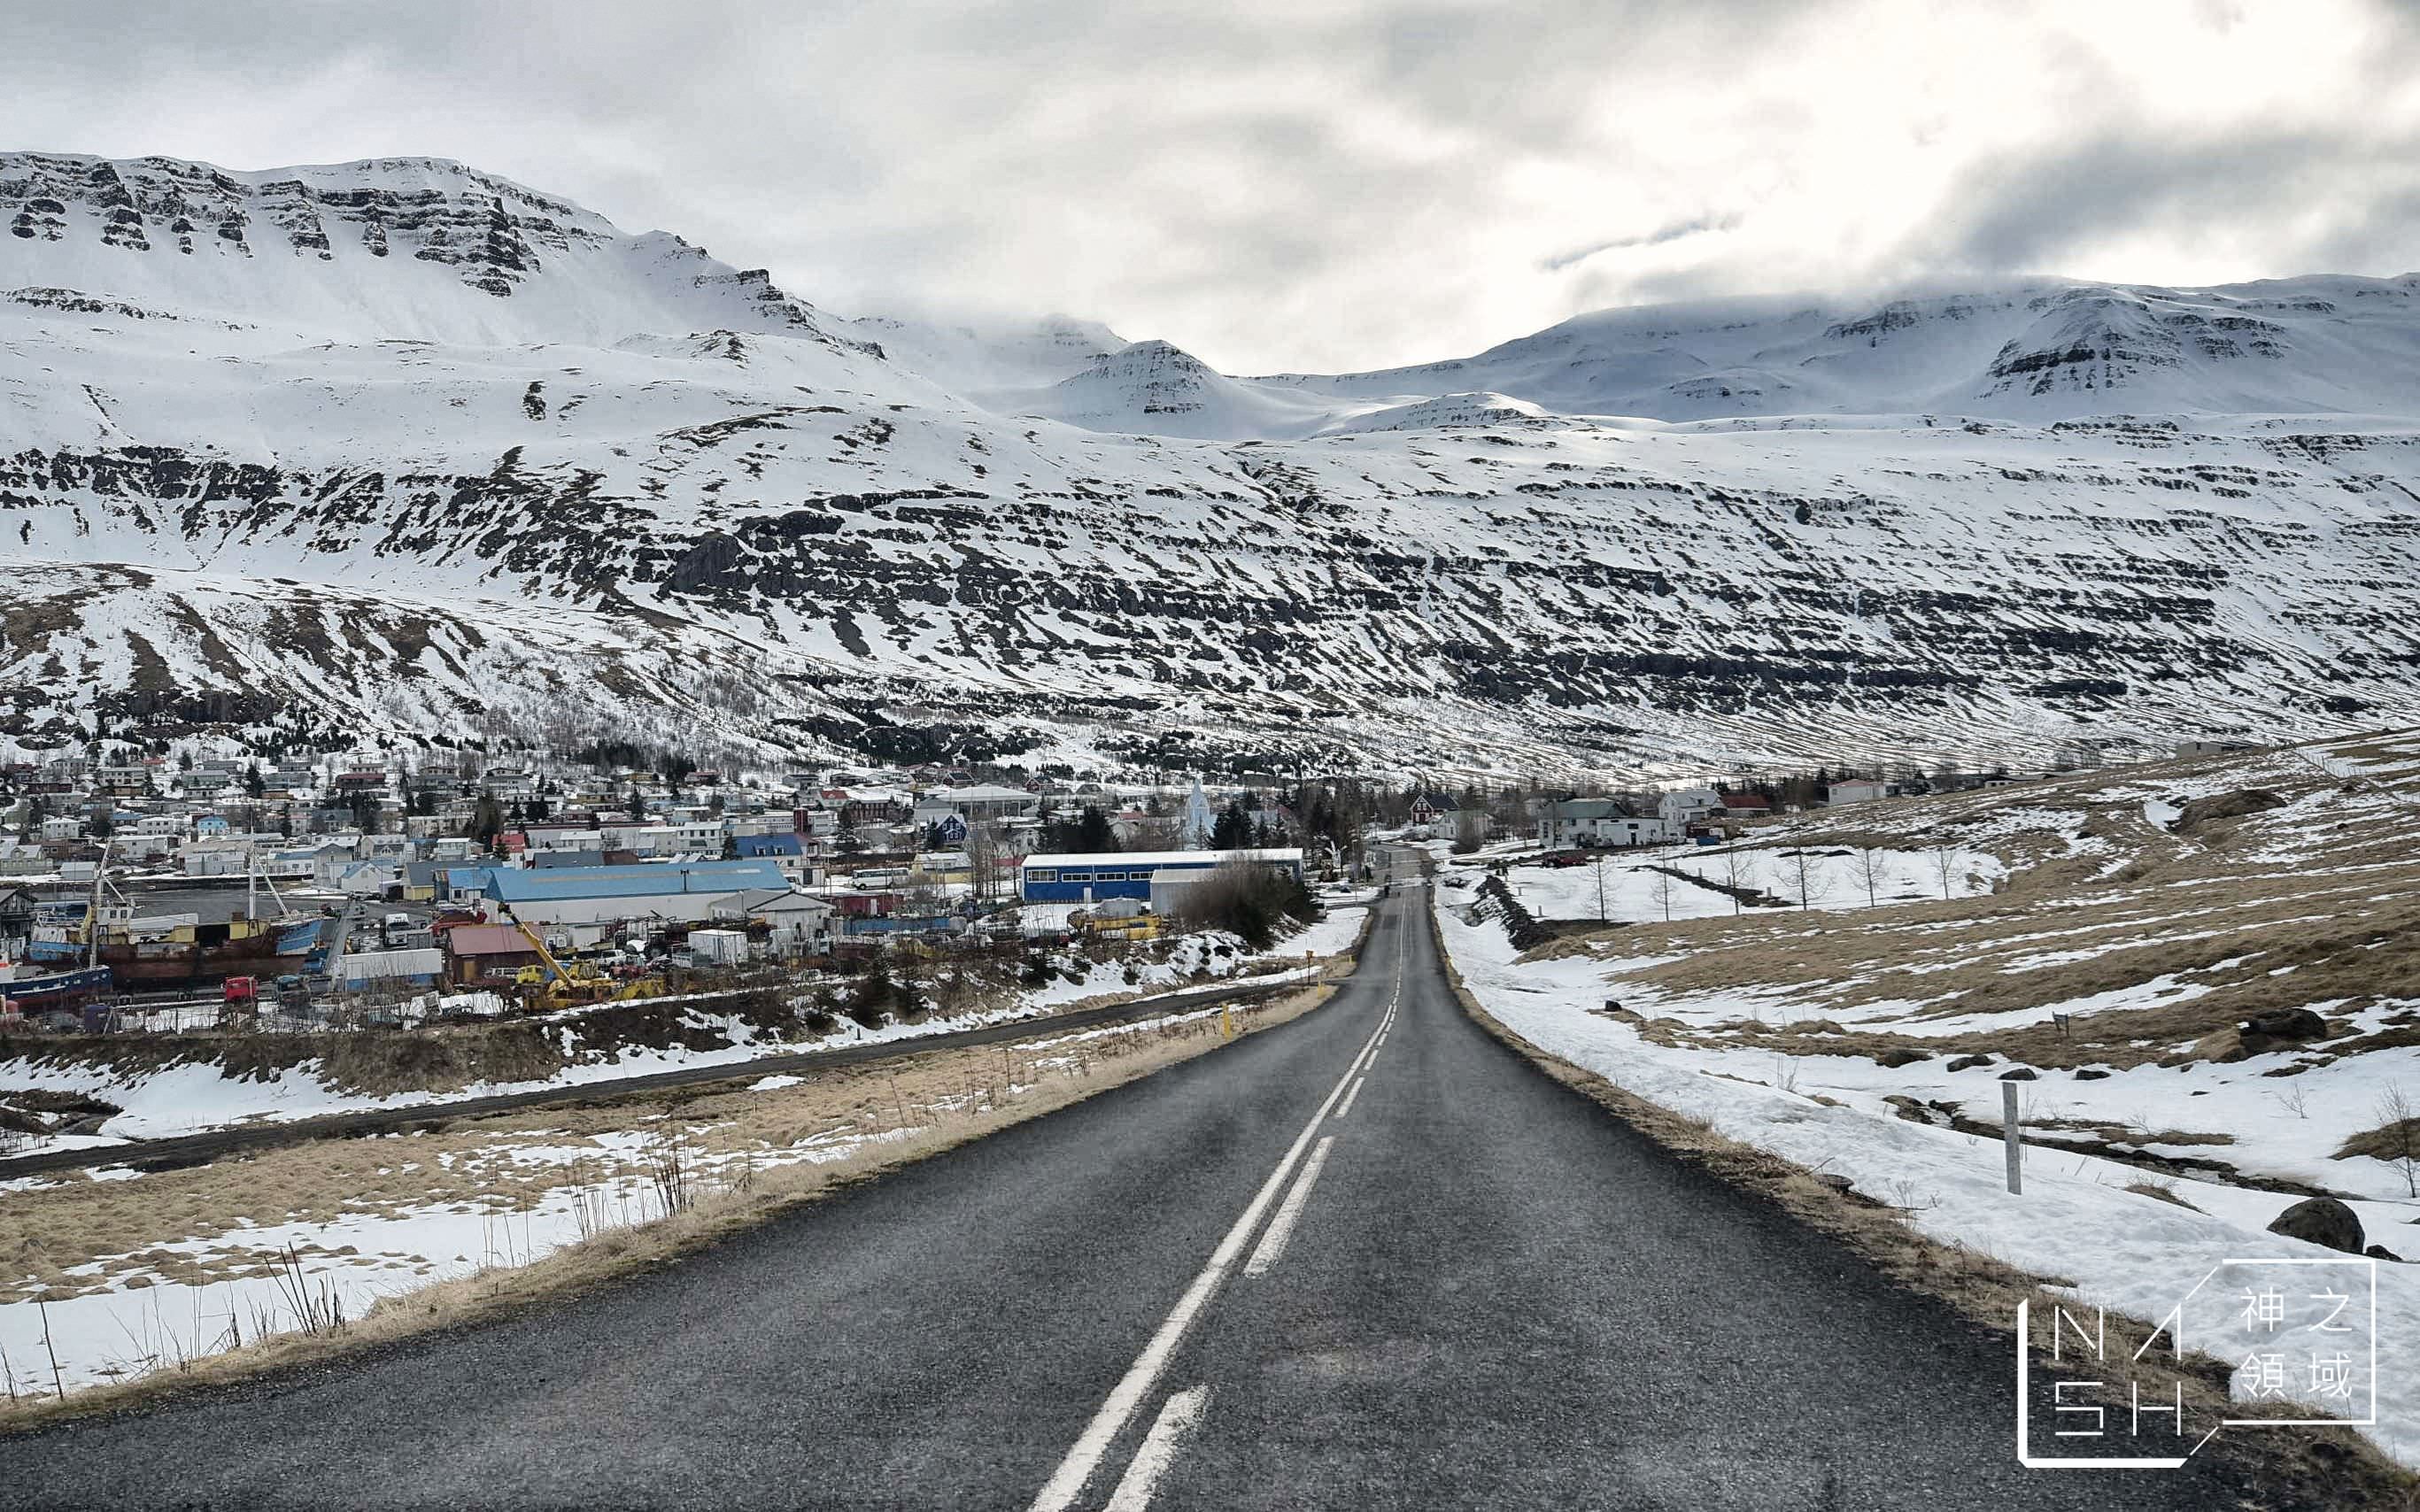 冰島自由行環島景點推薦,塞濟斯菲厄澤,Seydisfjordur,冰島東部峽灣小鎮,白日夢冒險王滑板公路